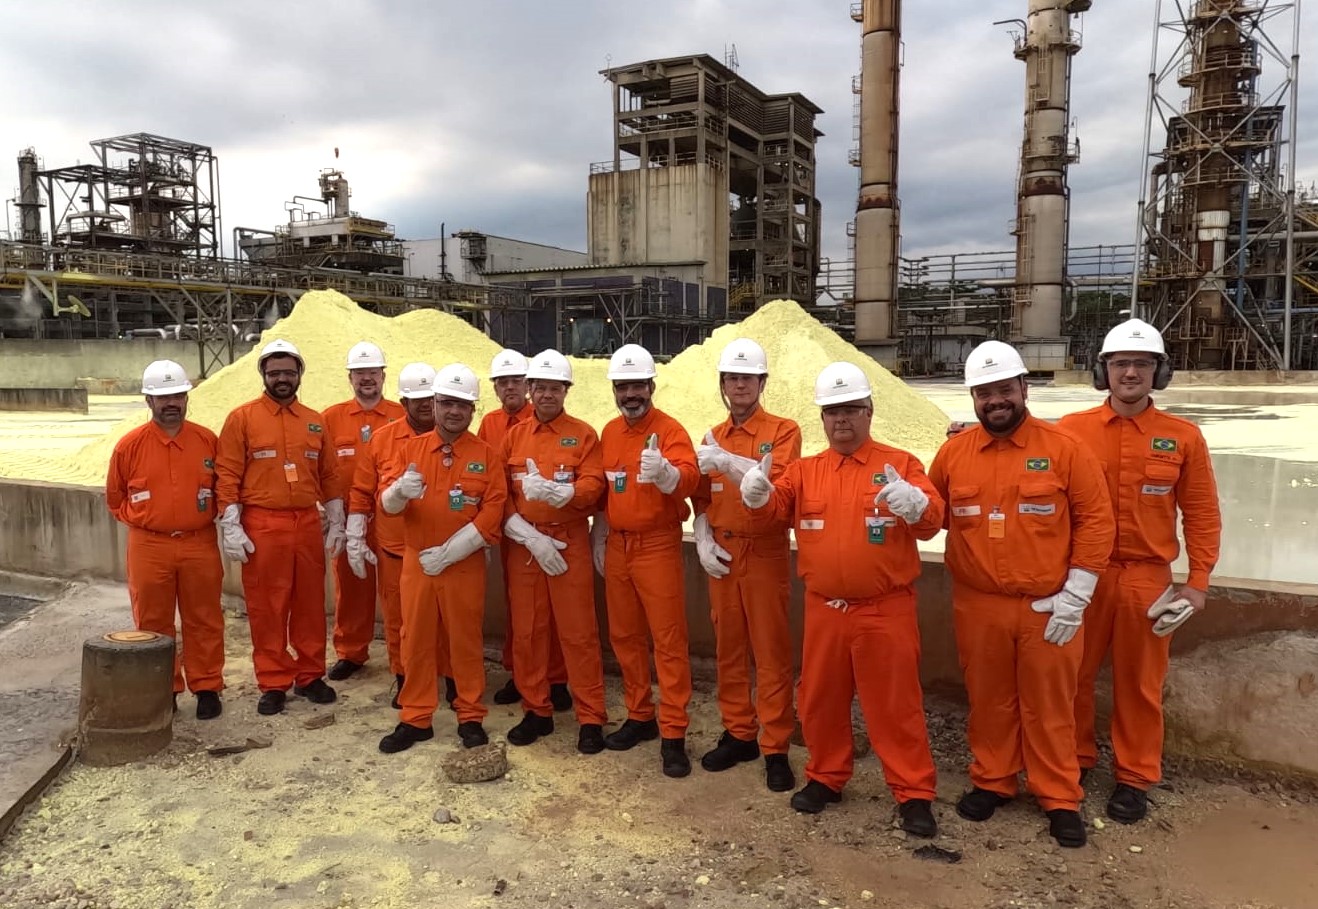 Equipes de trabalhadores vestidos com macacões laranja, diante de um pátio com montes de enxofre sólido, com instalações industriais ao fundo e céu carregado de nuvens cinzas